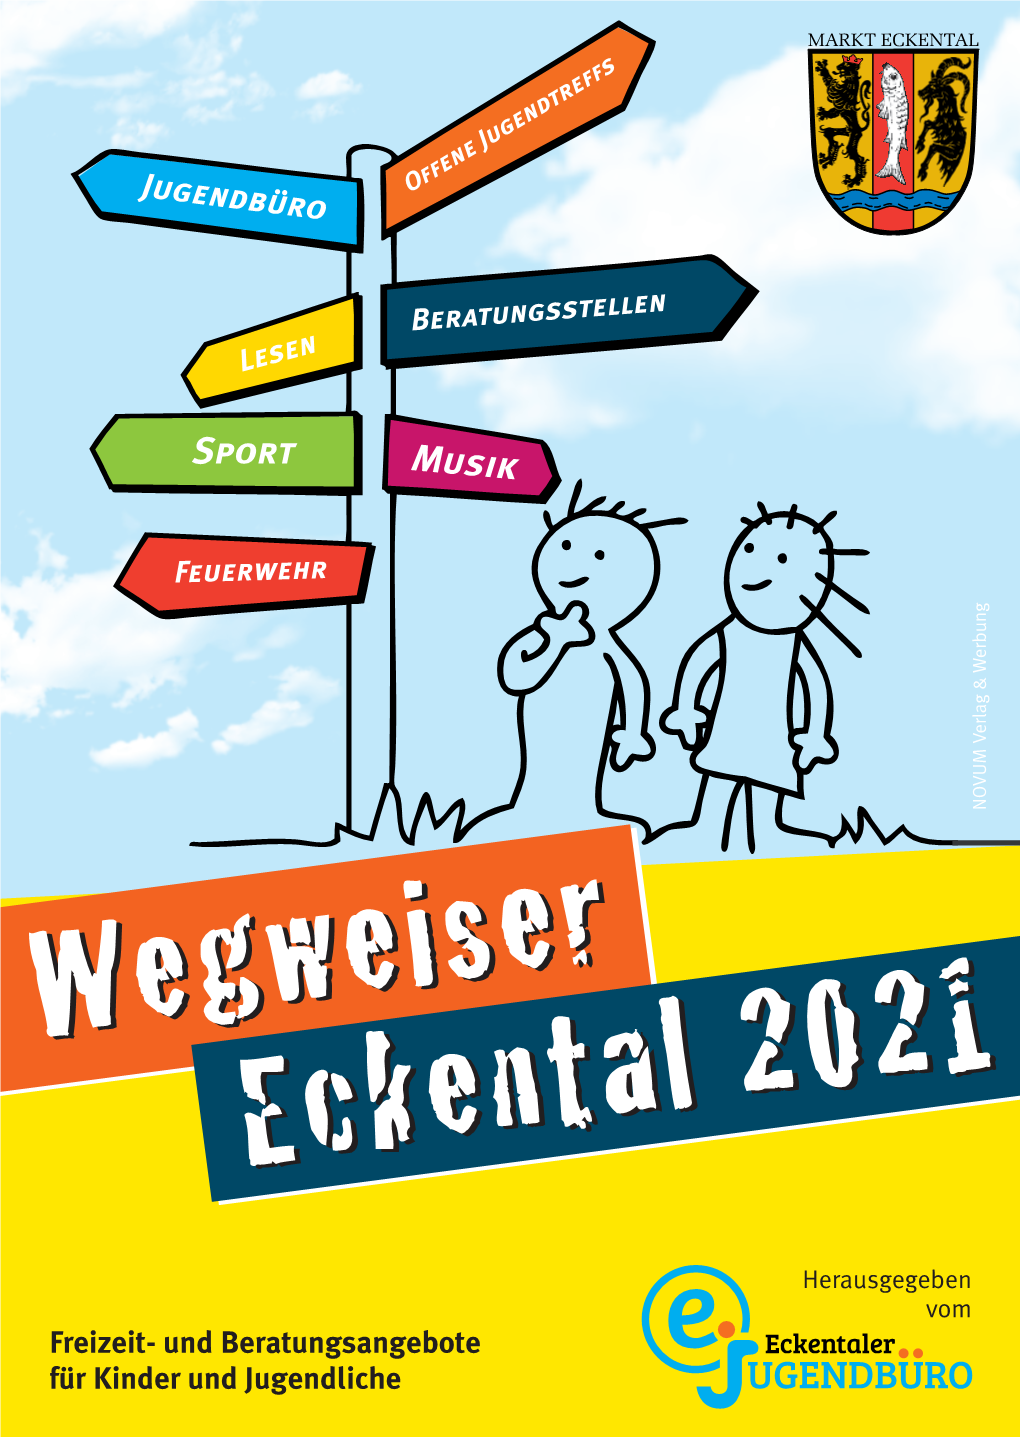 Wegweiser Eckental 2021 Wegweiser Eckental 2021